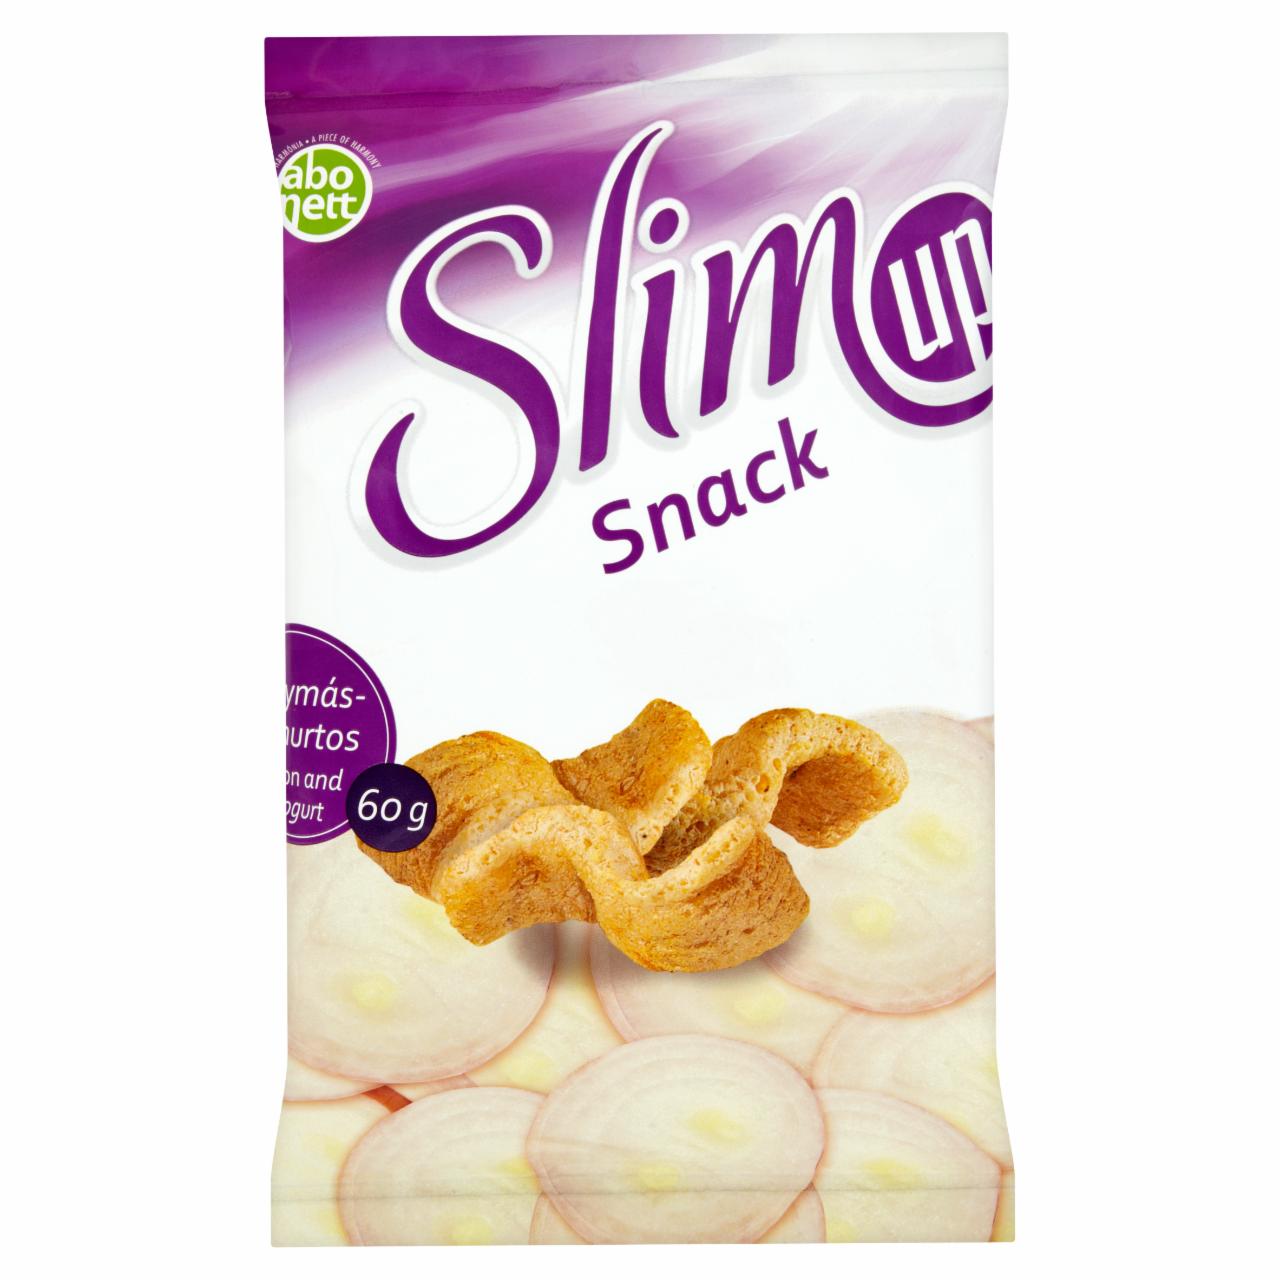 Képek - Abonett SlimUp hagymás-joghurtos snack 60 g